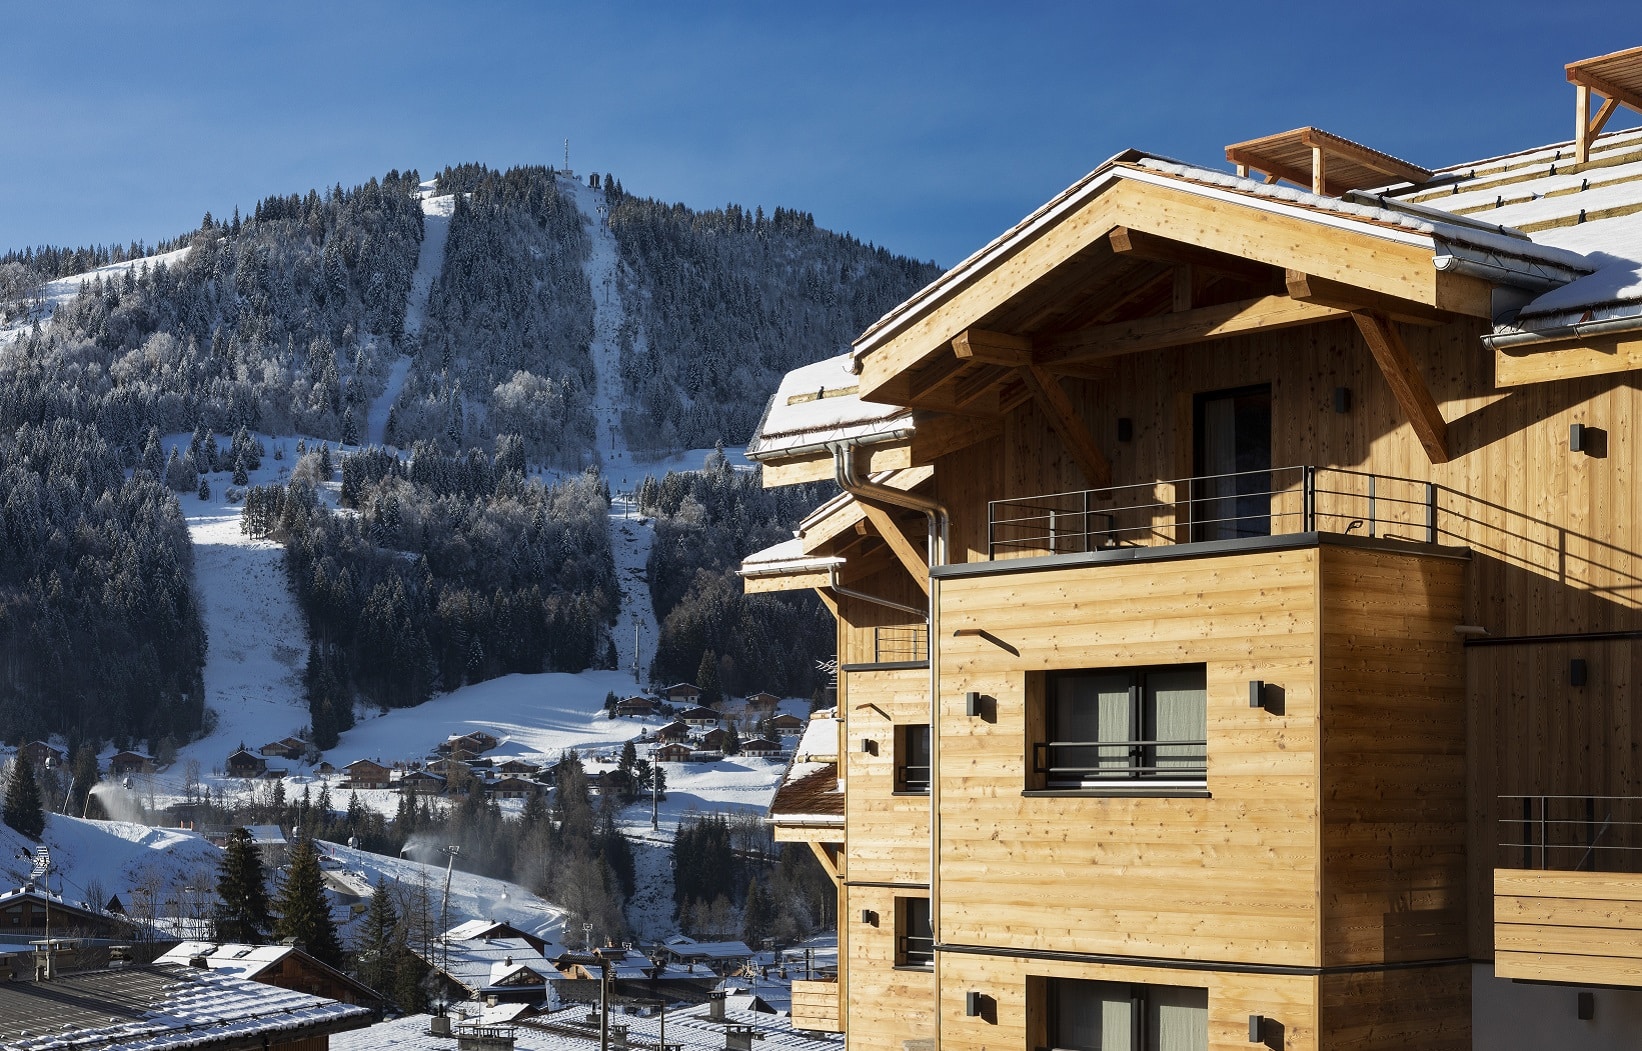 Découvrez pour de vos évènements professionnels en Haute-Savoie, St-Alban Hotel & Spa une adresse élégante et cosy.